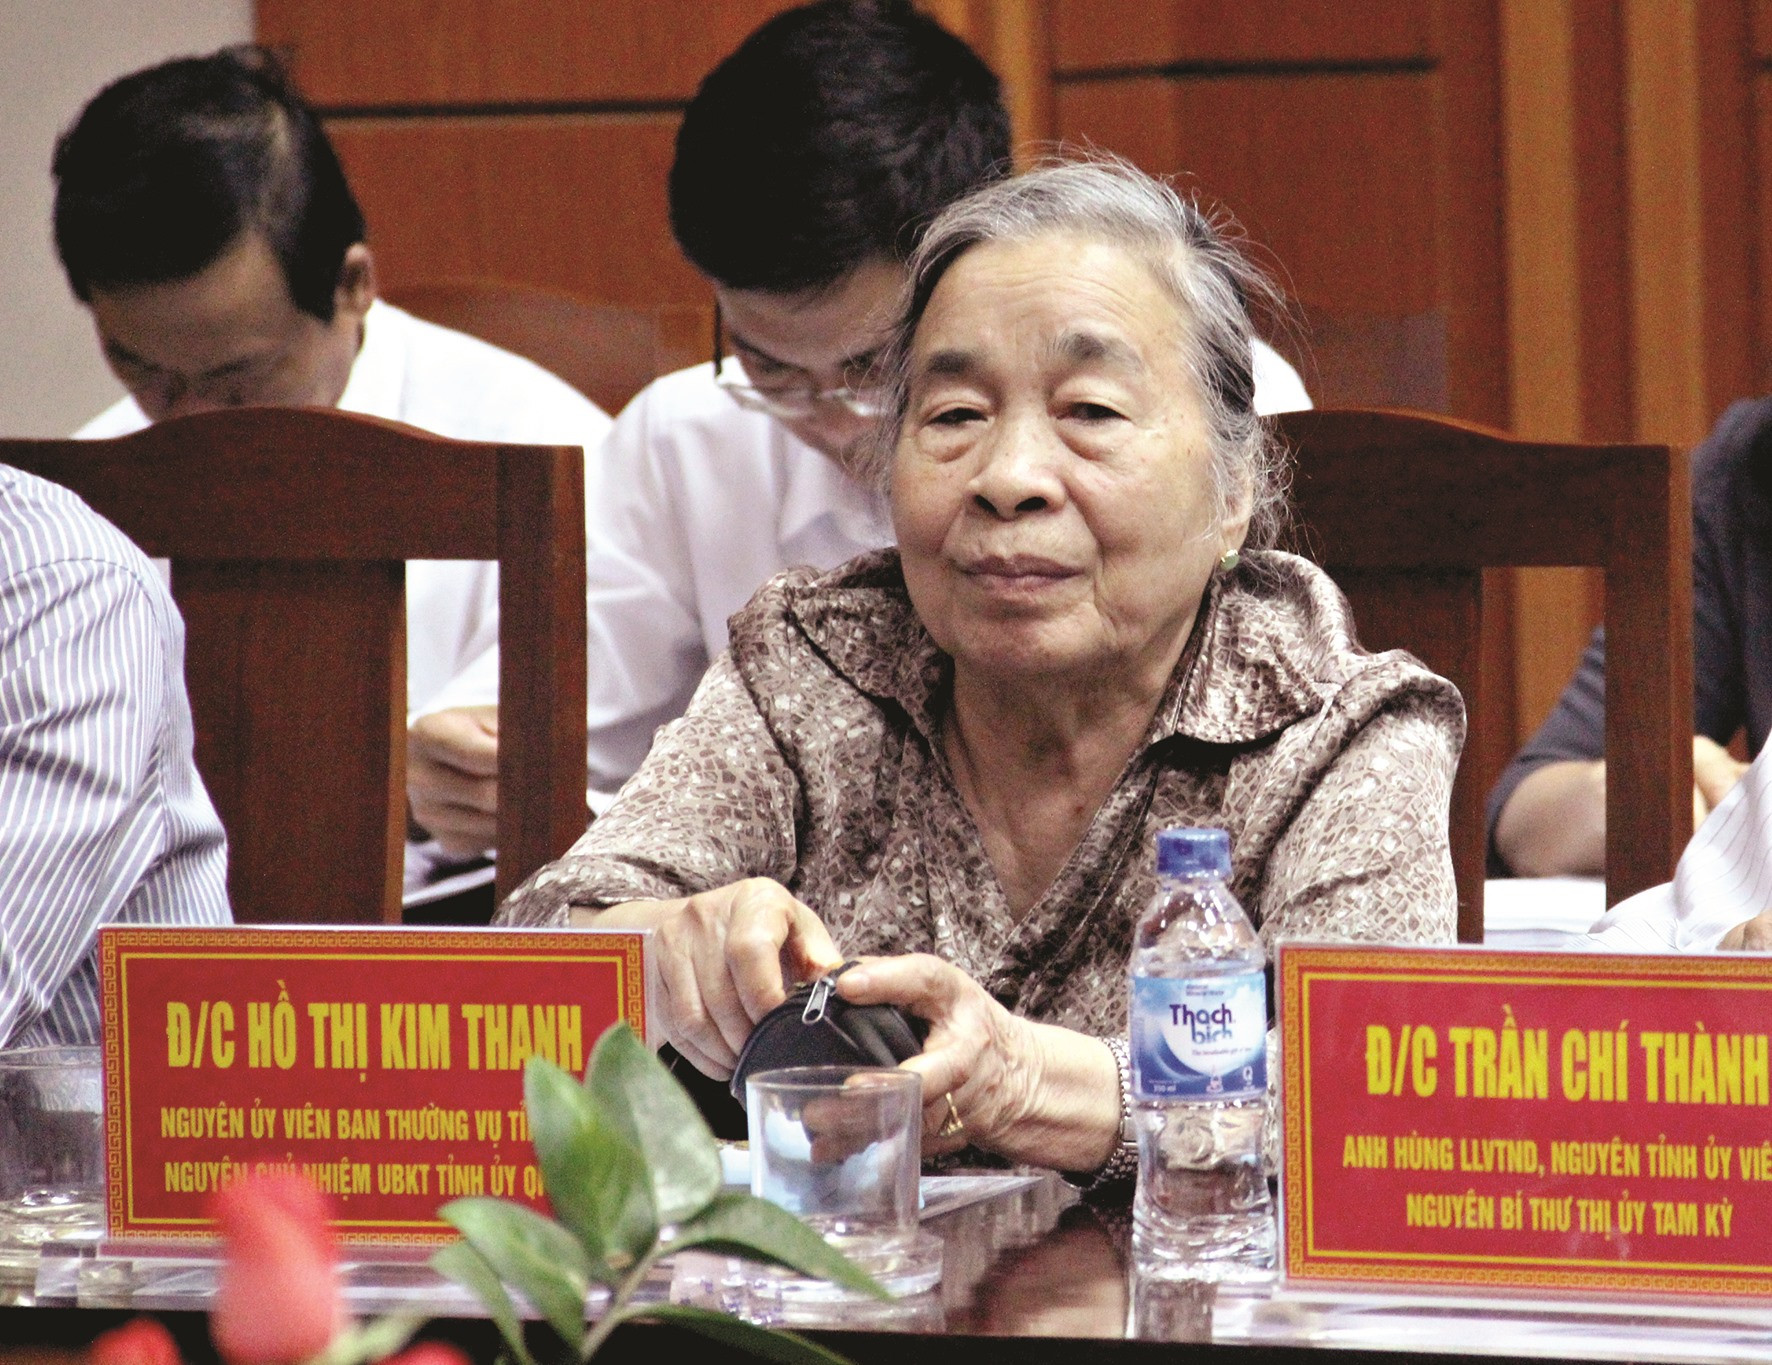 Bà Hồ Thị Kim Thanh, một “chứng nhân” của sự kiện Mậu Thân 1968. Ảnh: T.C